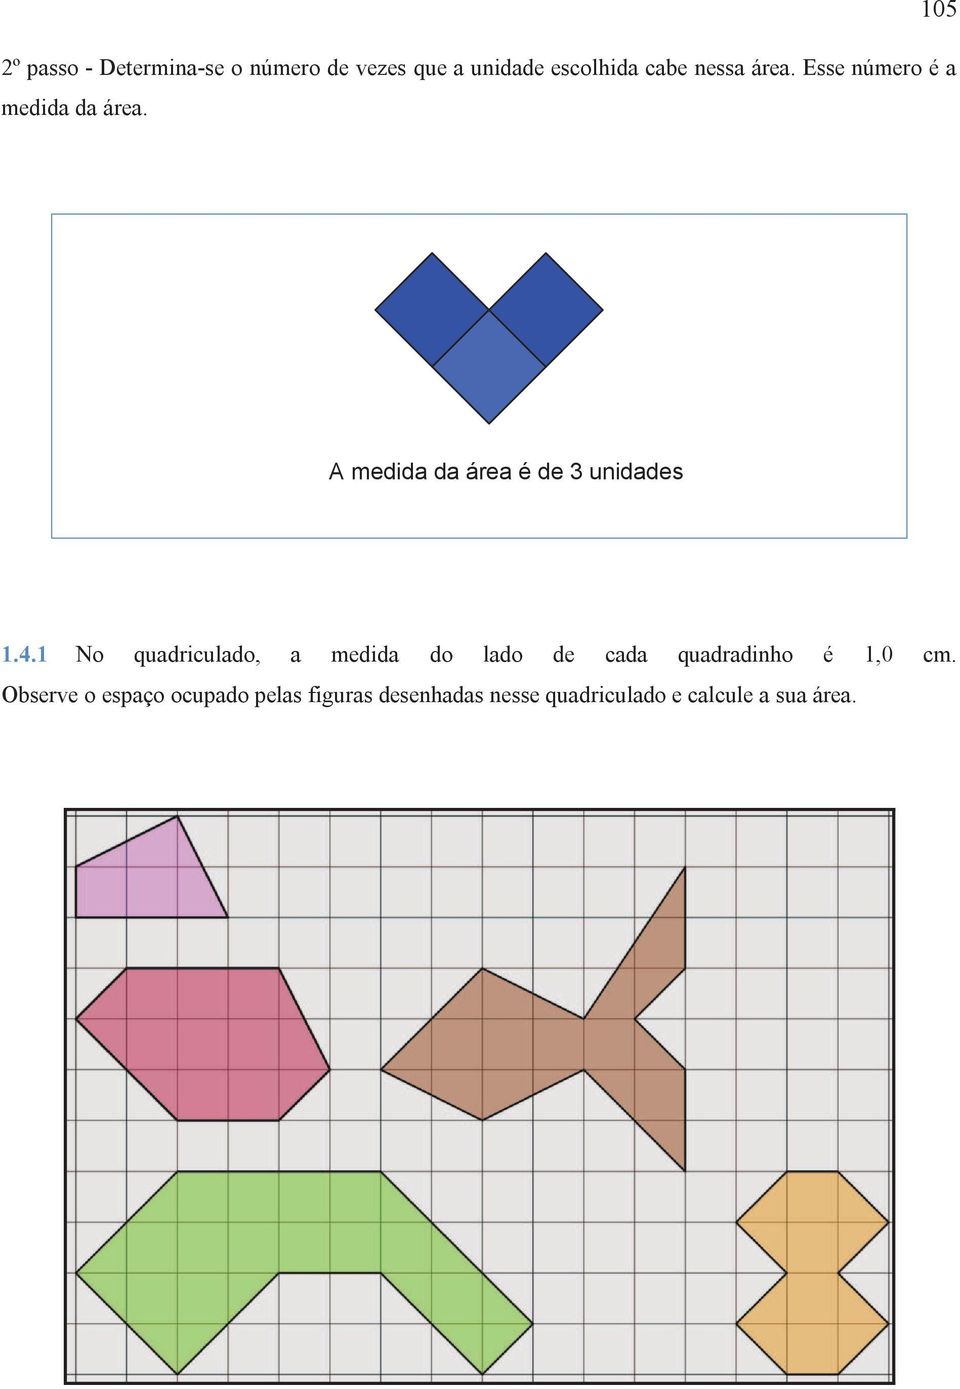 4.1 No quadriculado, a medida do lado de cada quadradinho é 1,0 cm.